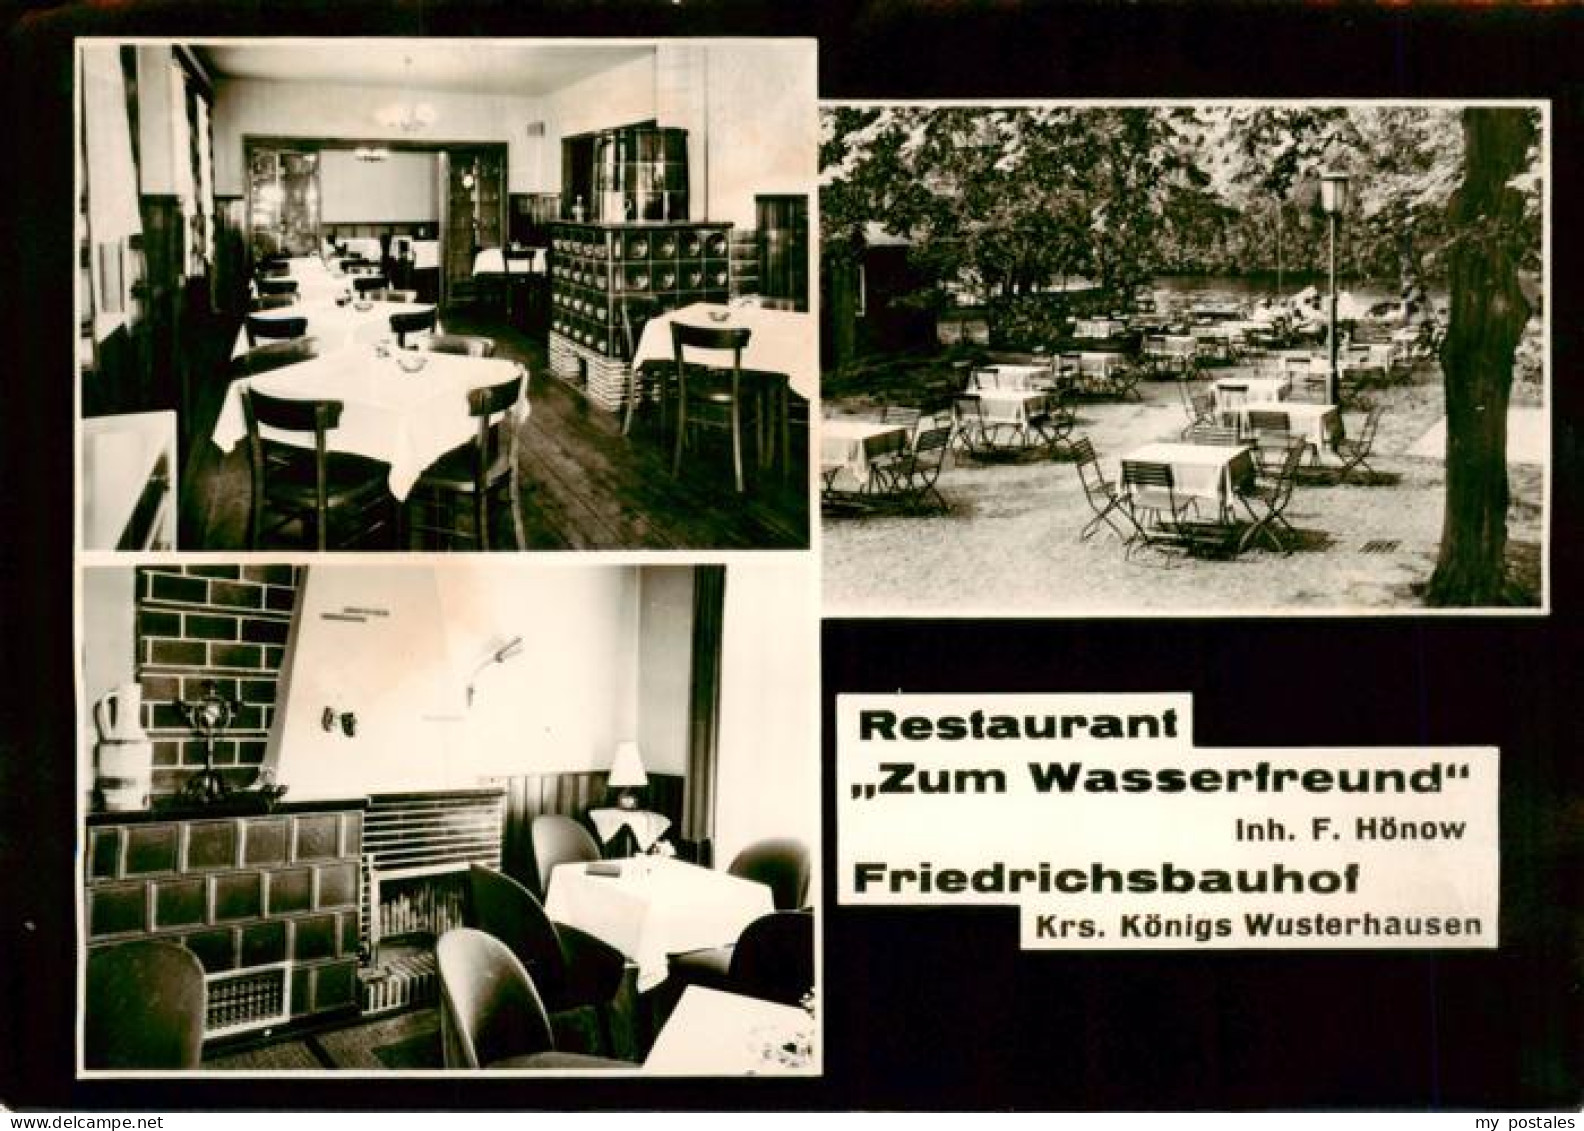 73901687 Friedrichsbauhof Restaurant Zum Wasserfreund Gastraum Gartenrestaurant  - Bestensee